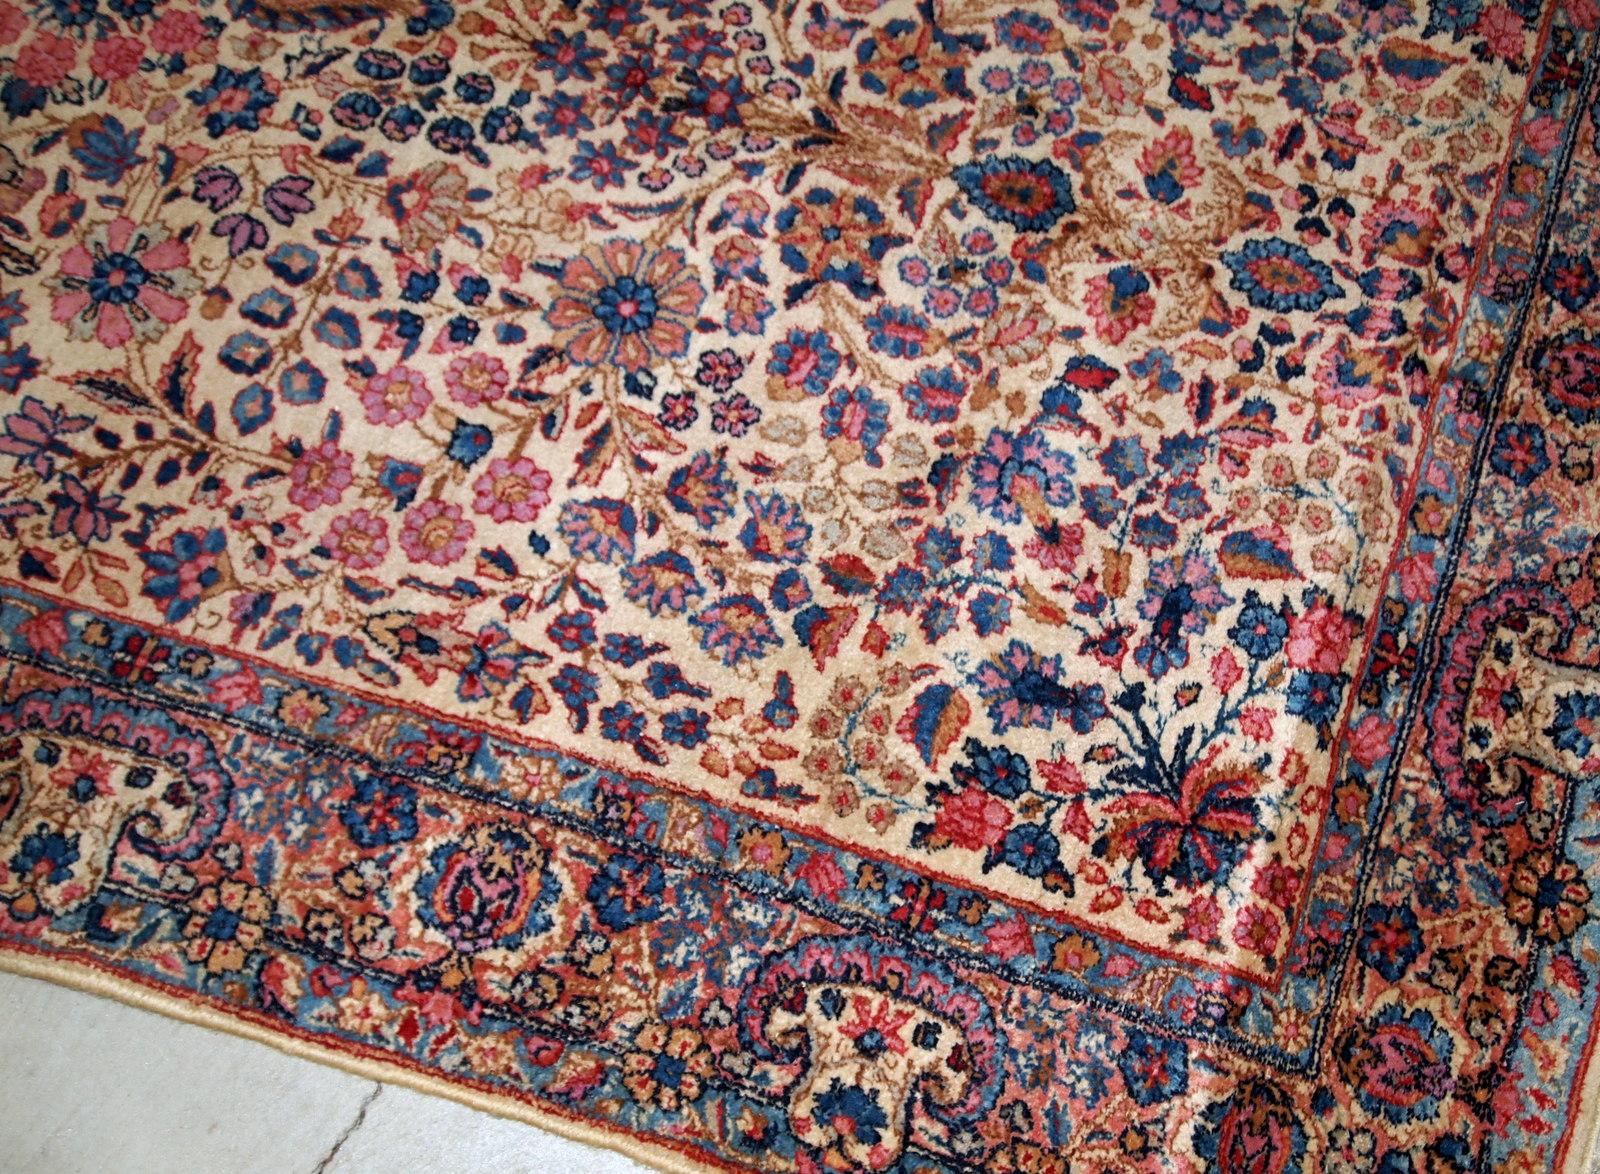 Handgewebter antiker Kerman-Teppich in gutem Originalzustand, aus dem Anfang des 20. Der Teppich ist in hellen Farbtönen gehalten und hat ein lebhaftes Blumenmuster.

-Zustand: Original gut,

-ca. 1920er Jahre,

-größe: 4,2' x 6,9' (128cm x